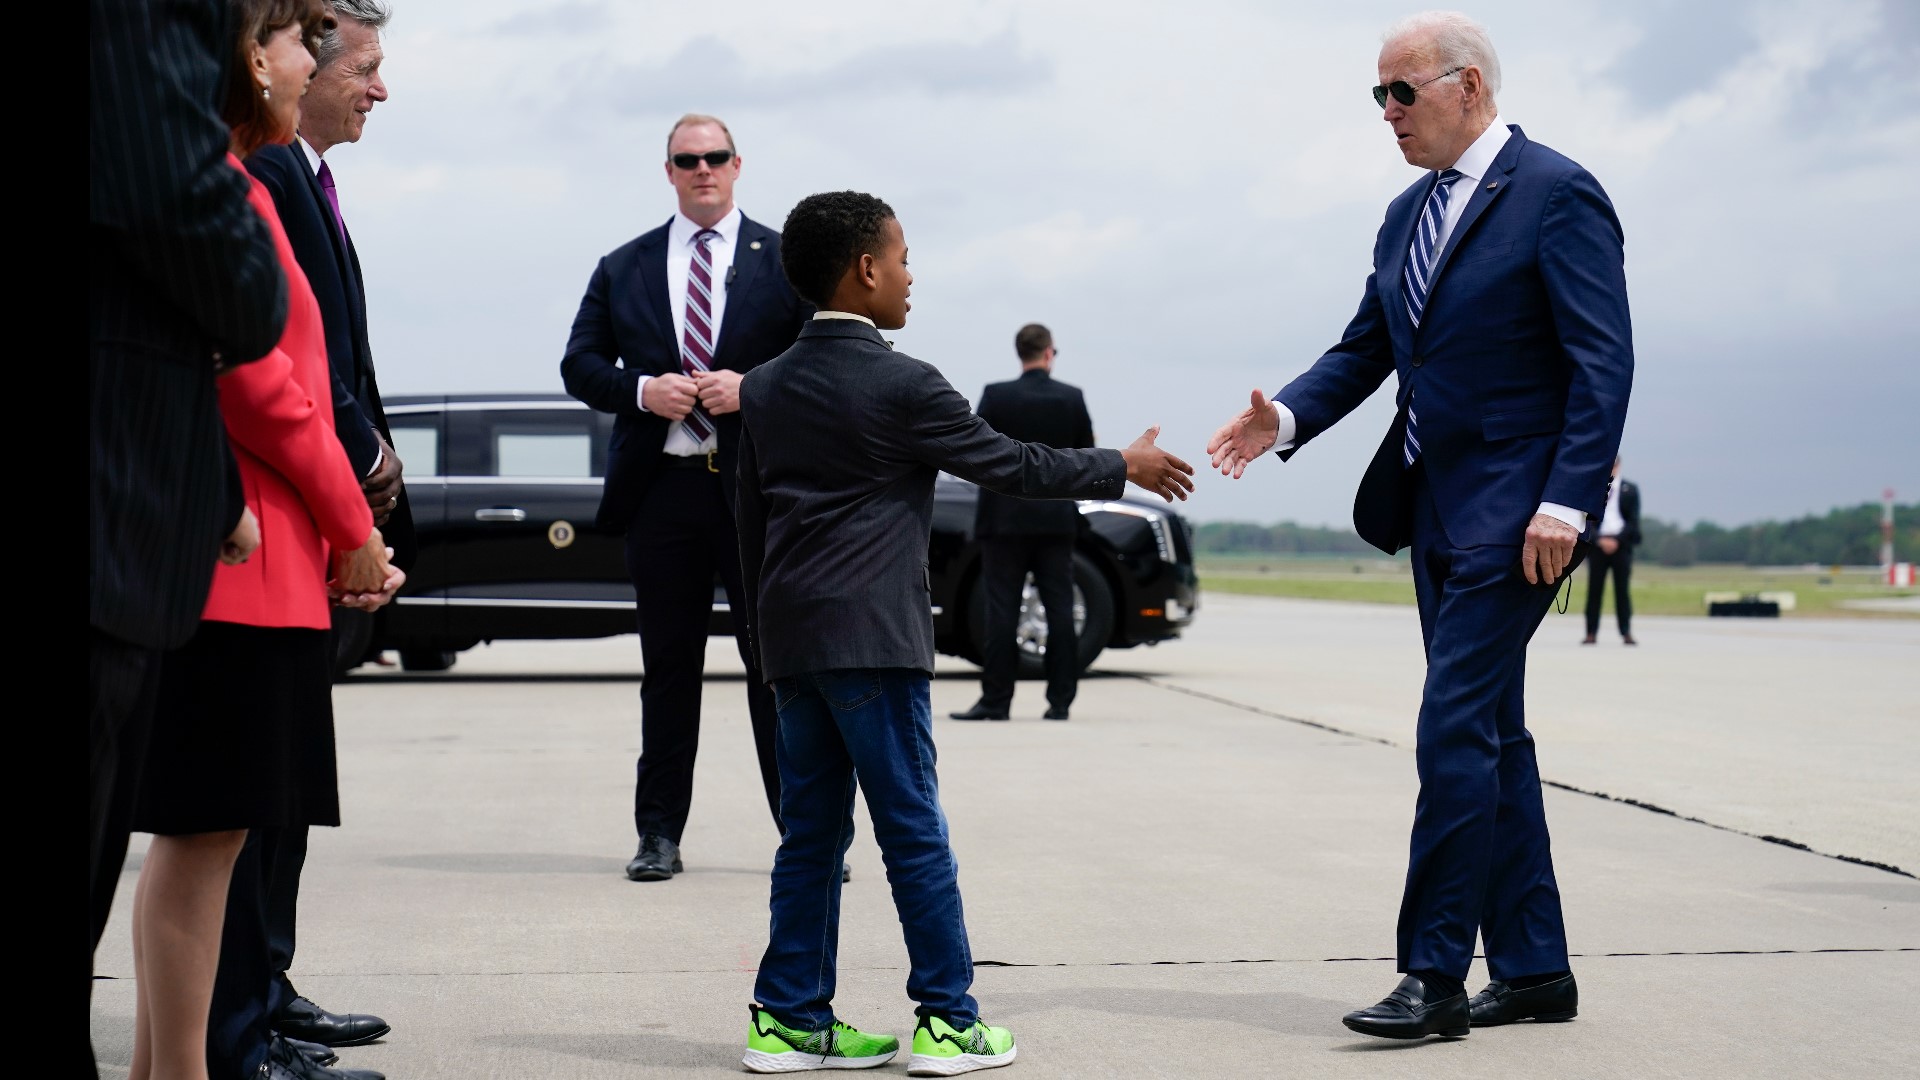 Biden lands at GNV airport, visits Live Oak